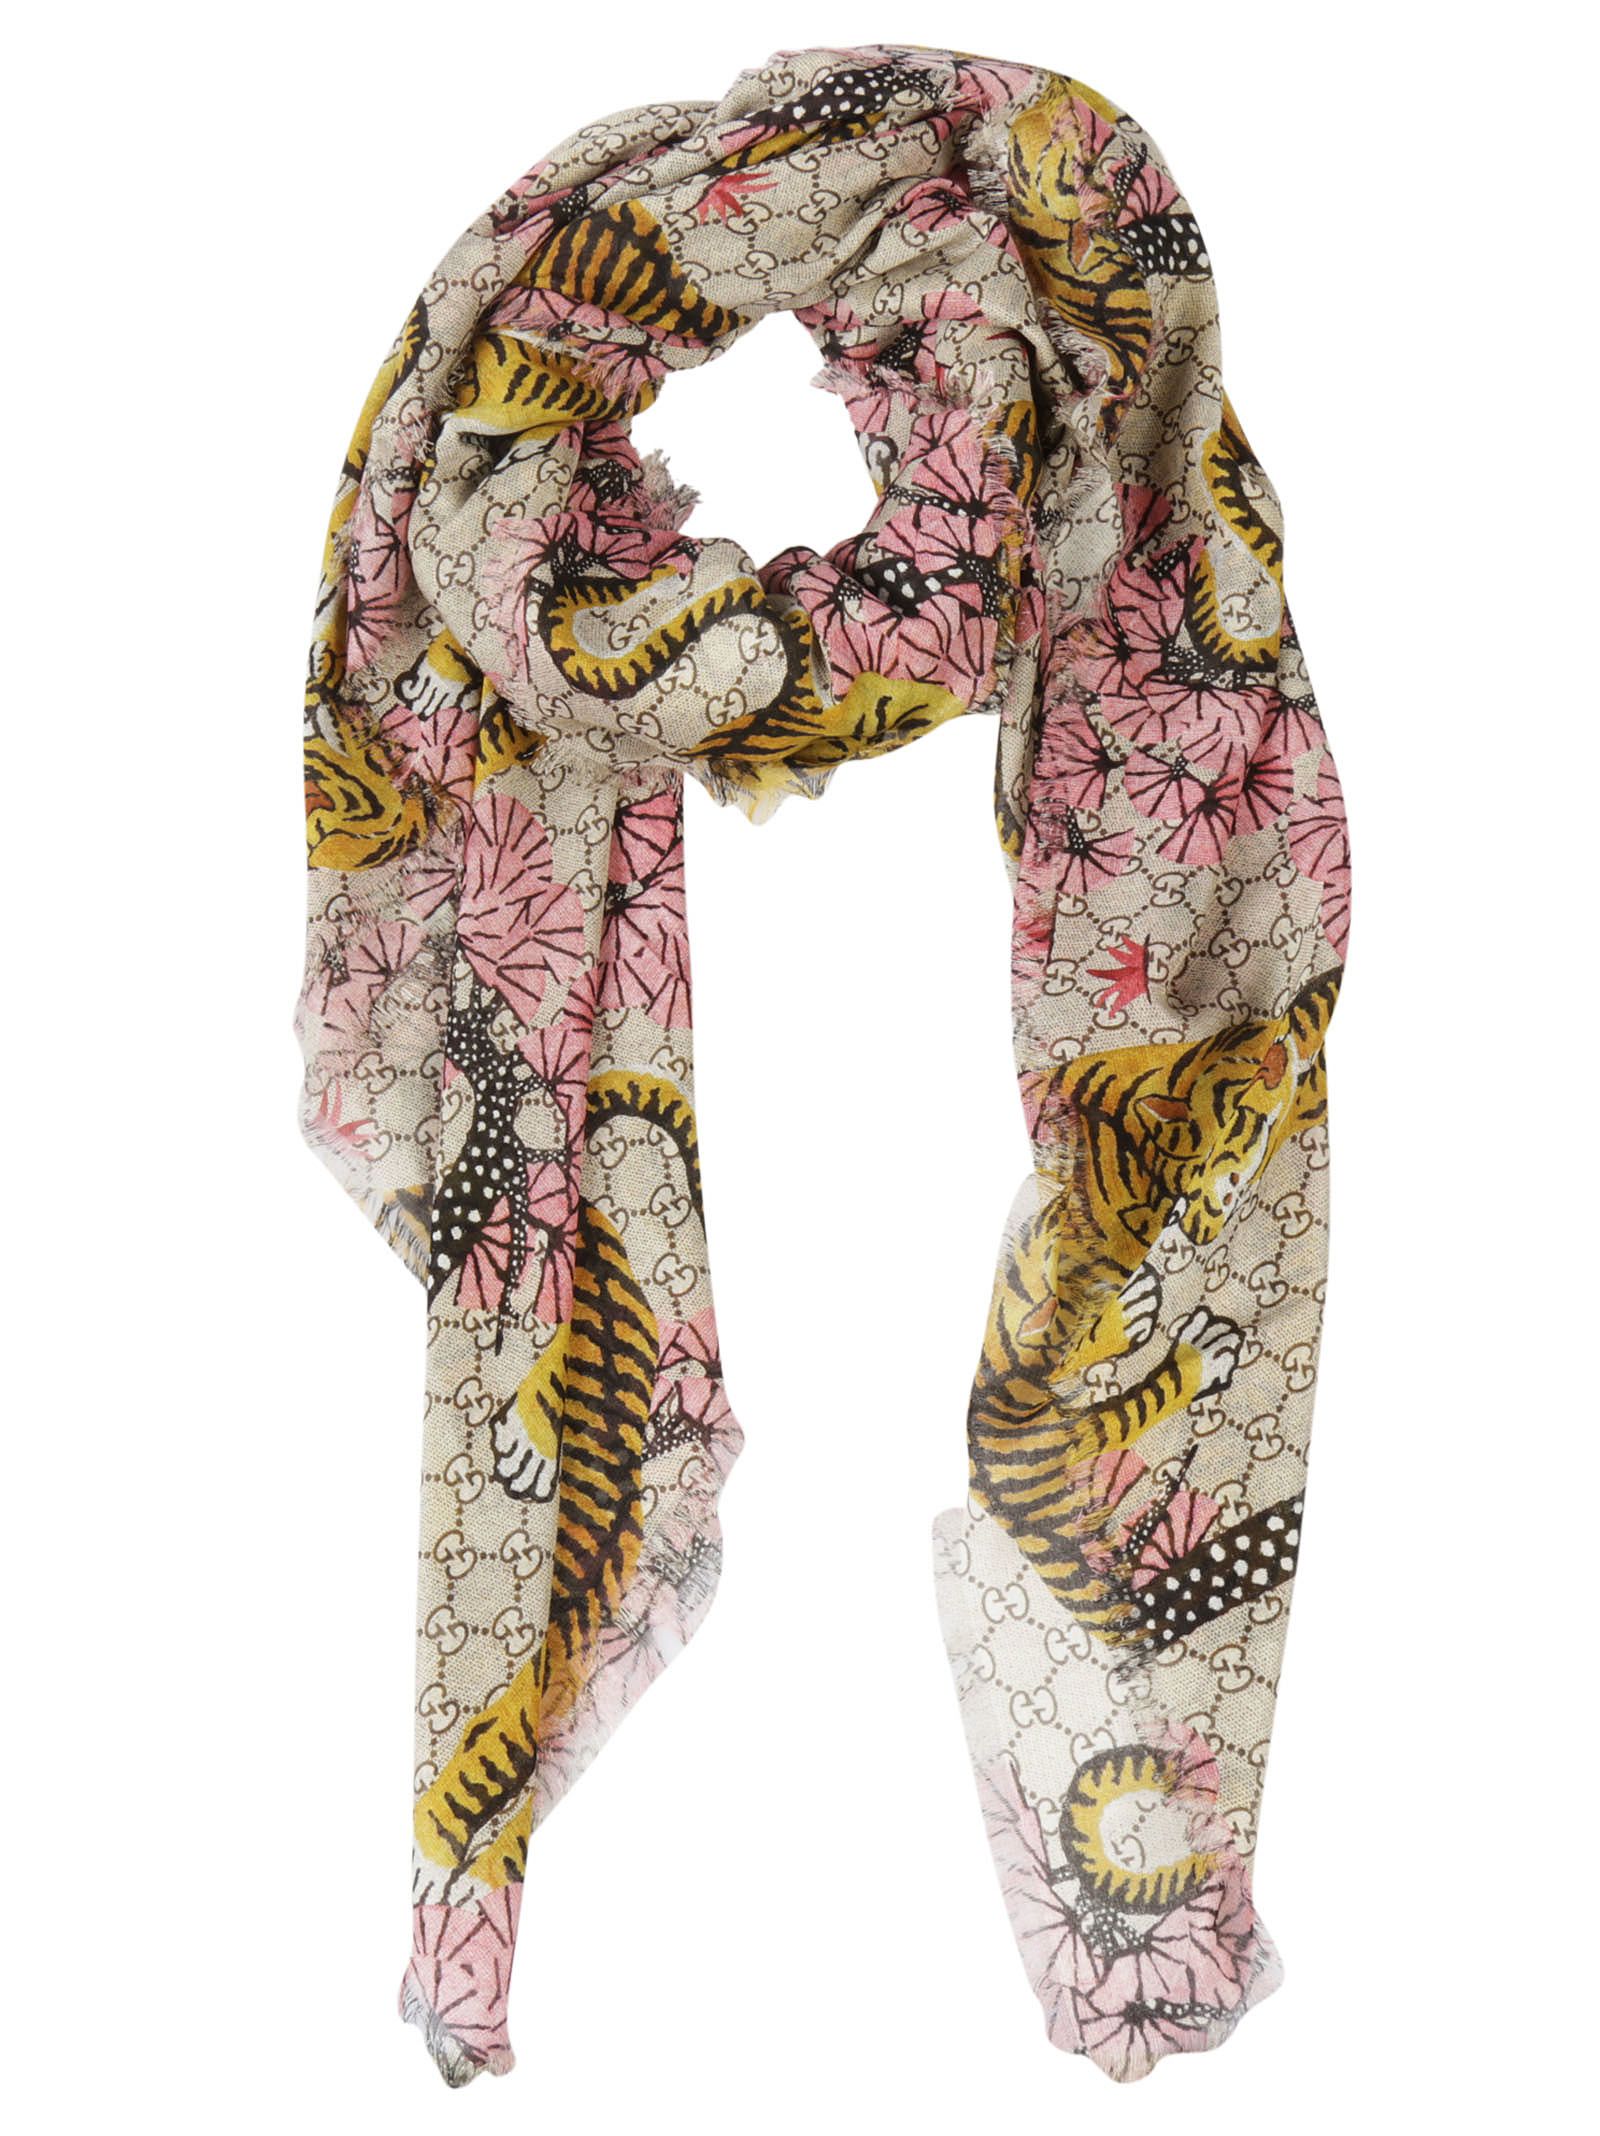 Gucci - Gucci Supreme Tiger Scarf - Multicolor, Women's Scarves & Wraps